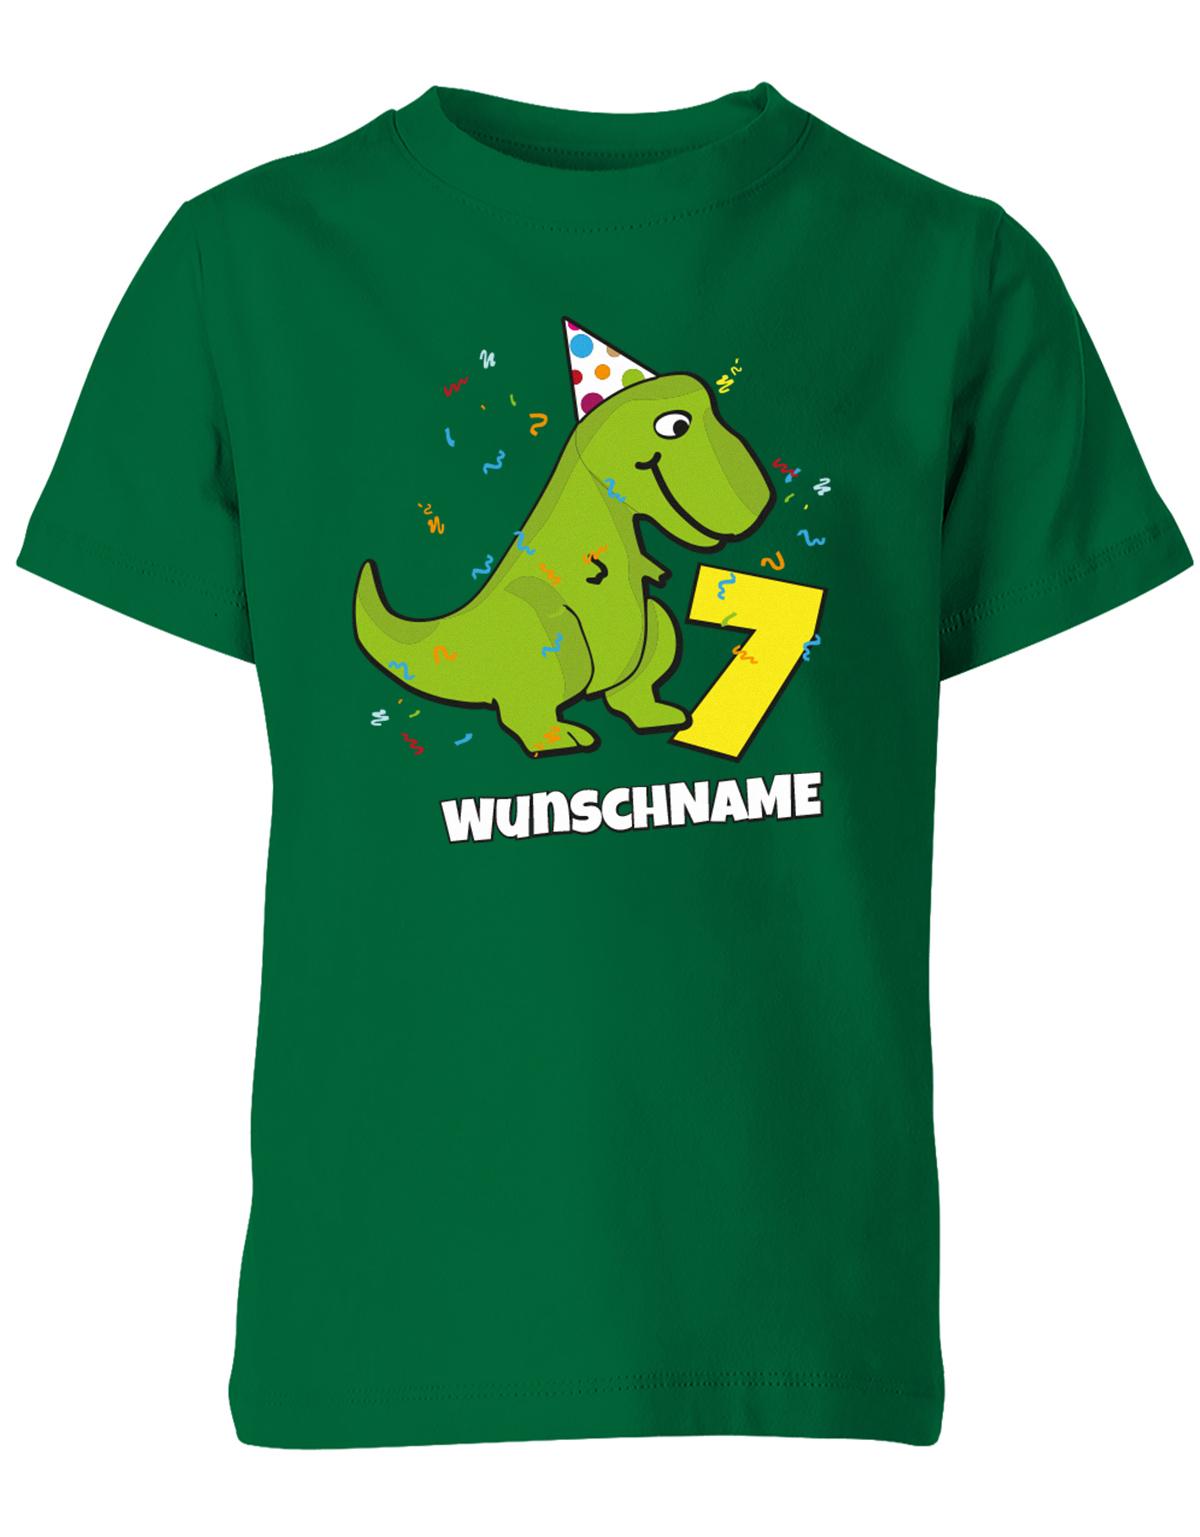 ich-bin-7-Dinosaurier-t-rex-wunschname-geburtstag-kinder-shirt-gruen